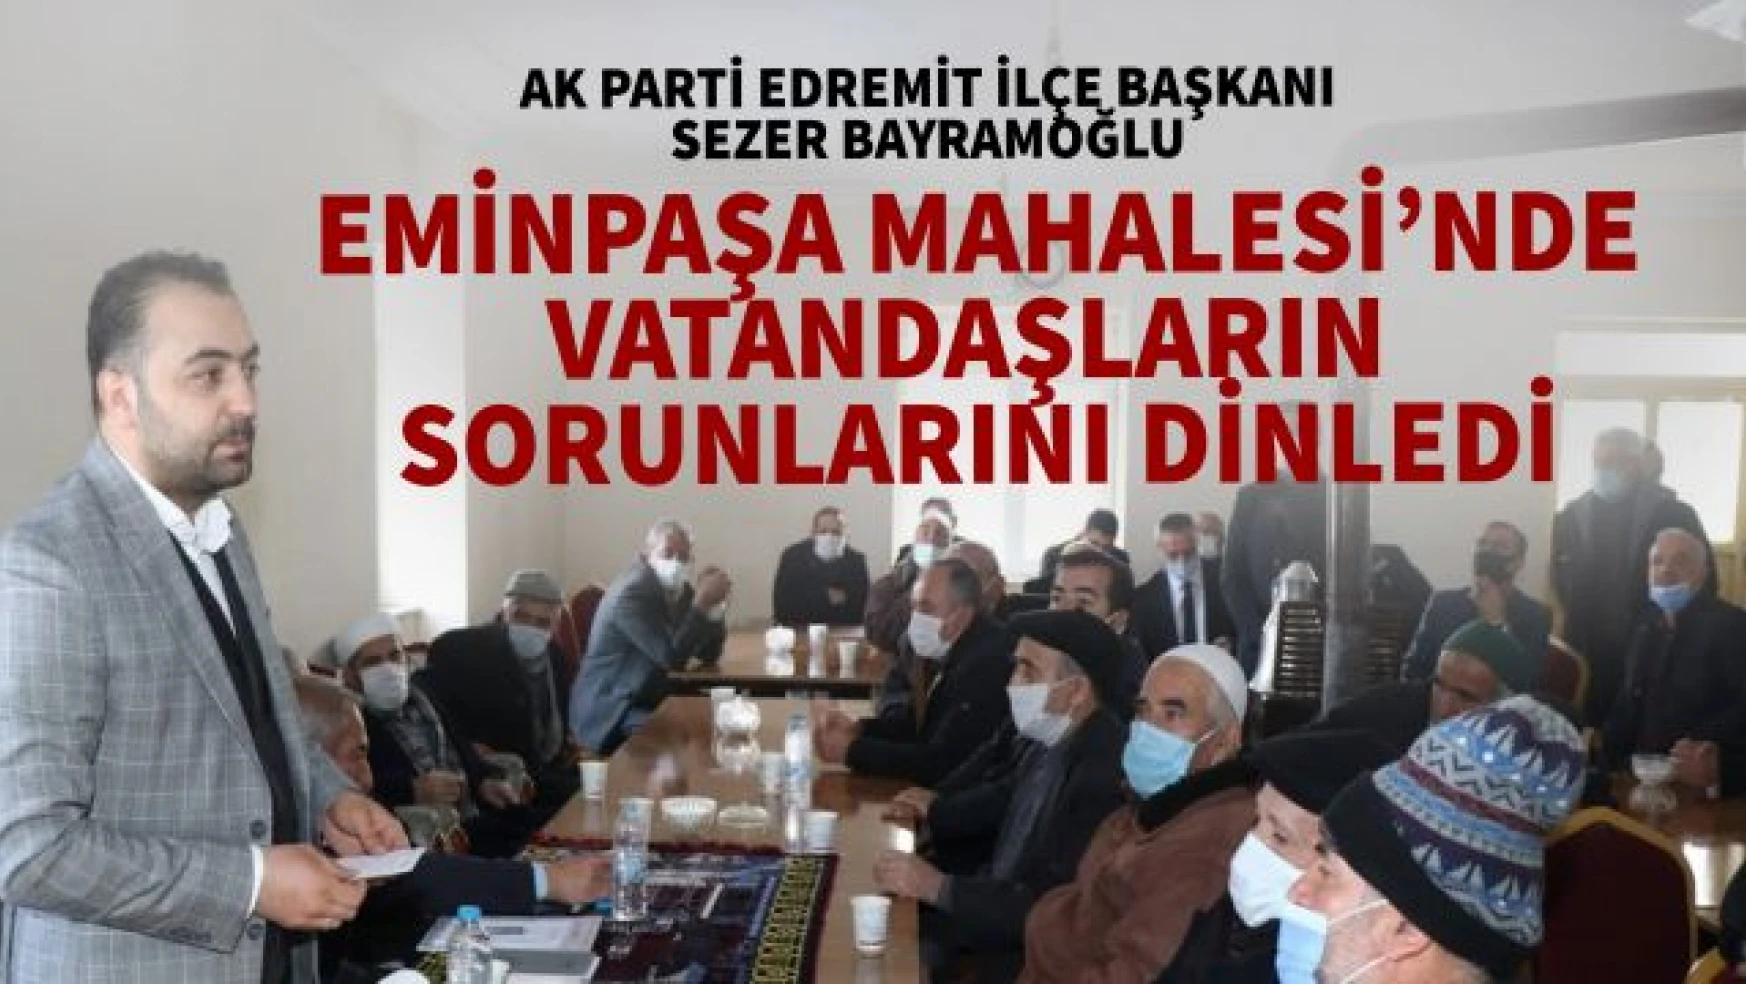 AK Parti Edremit İlçe Başkanı Sezer Bayramoğlu vatandaşın taleplerini dinledi